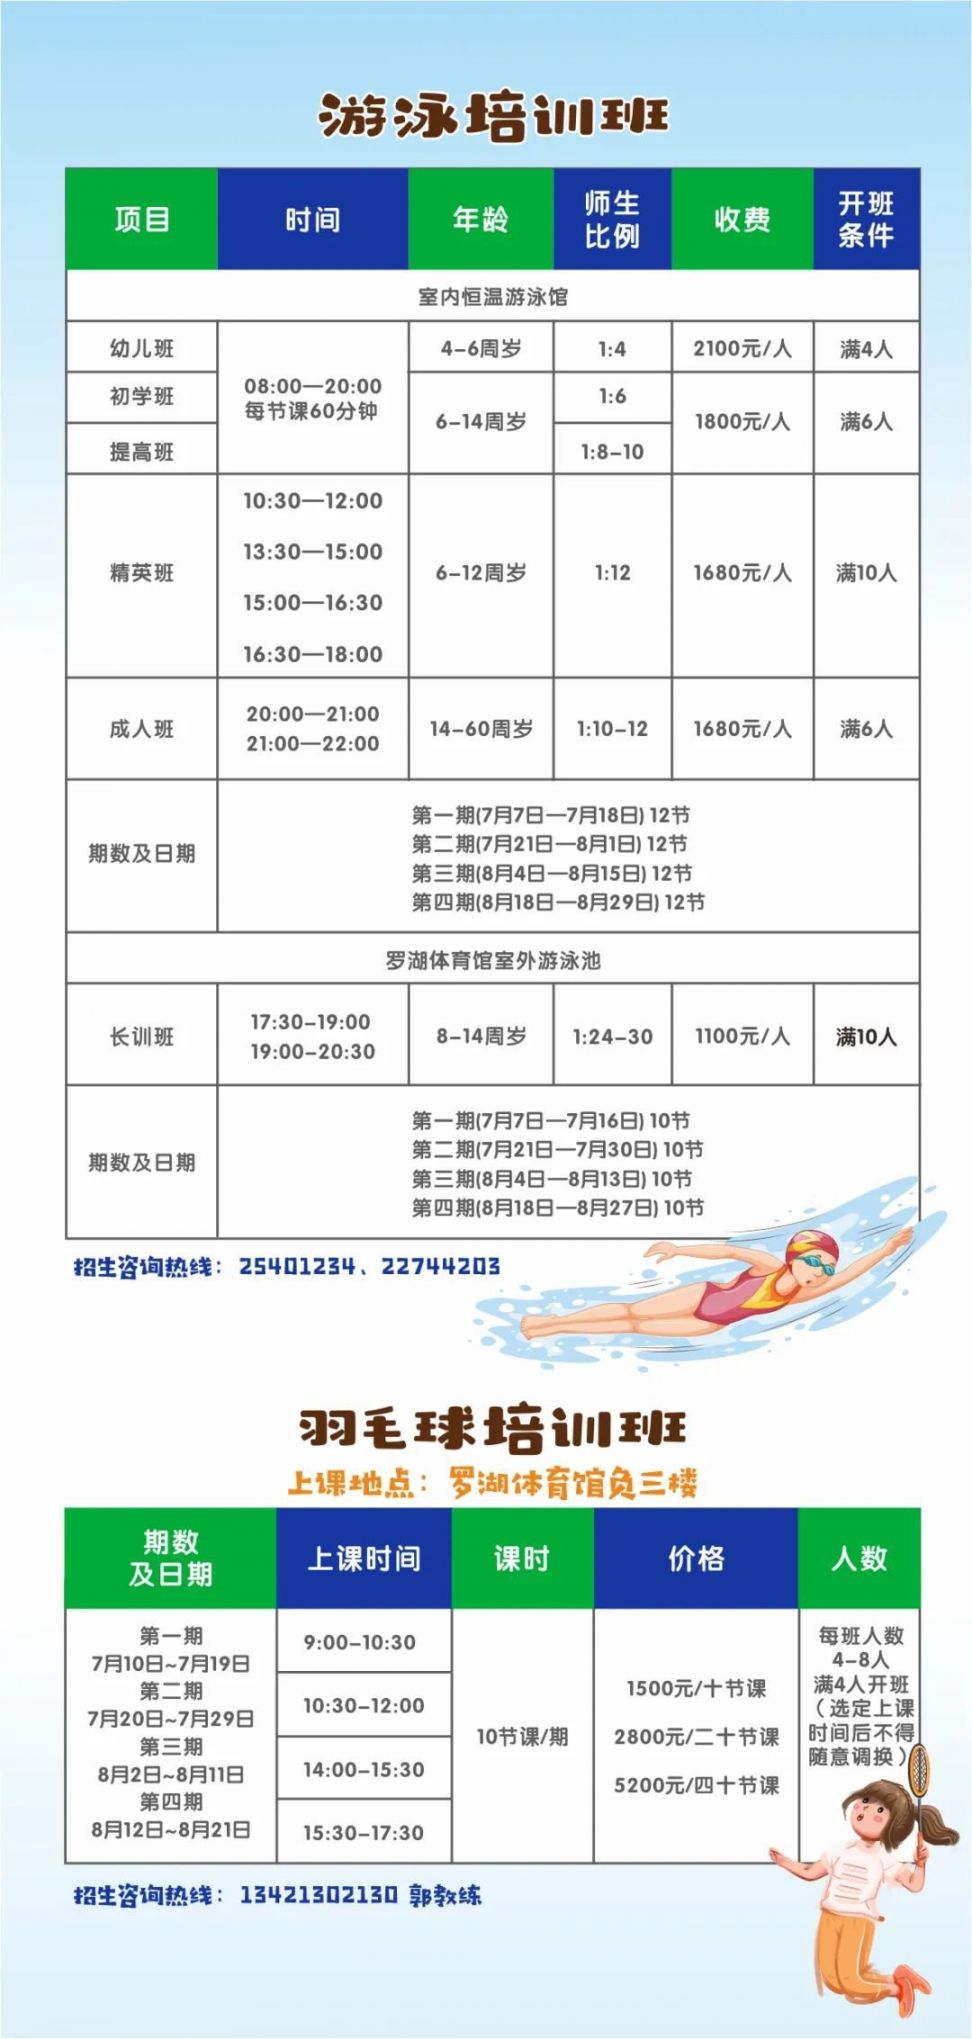 2021深圳罗湖体育中心暑假培训班项目课程表、费用及报名